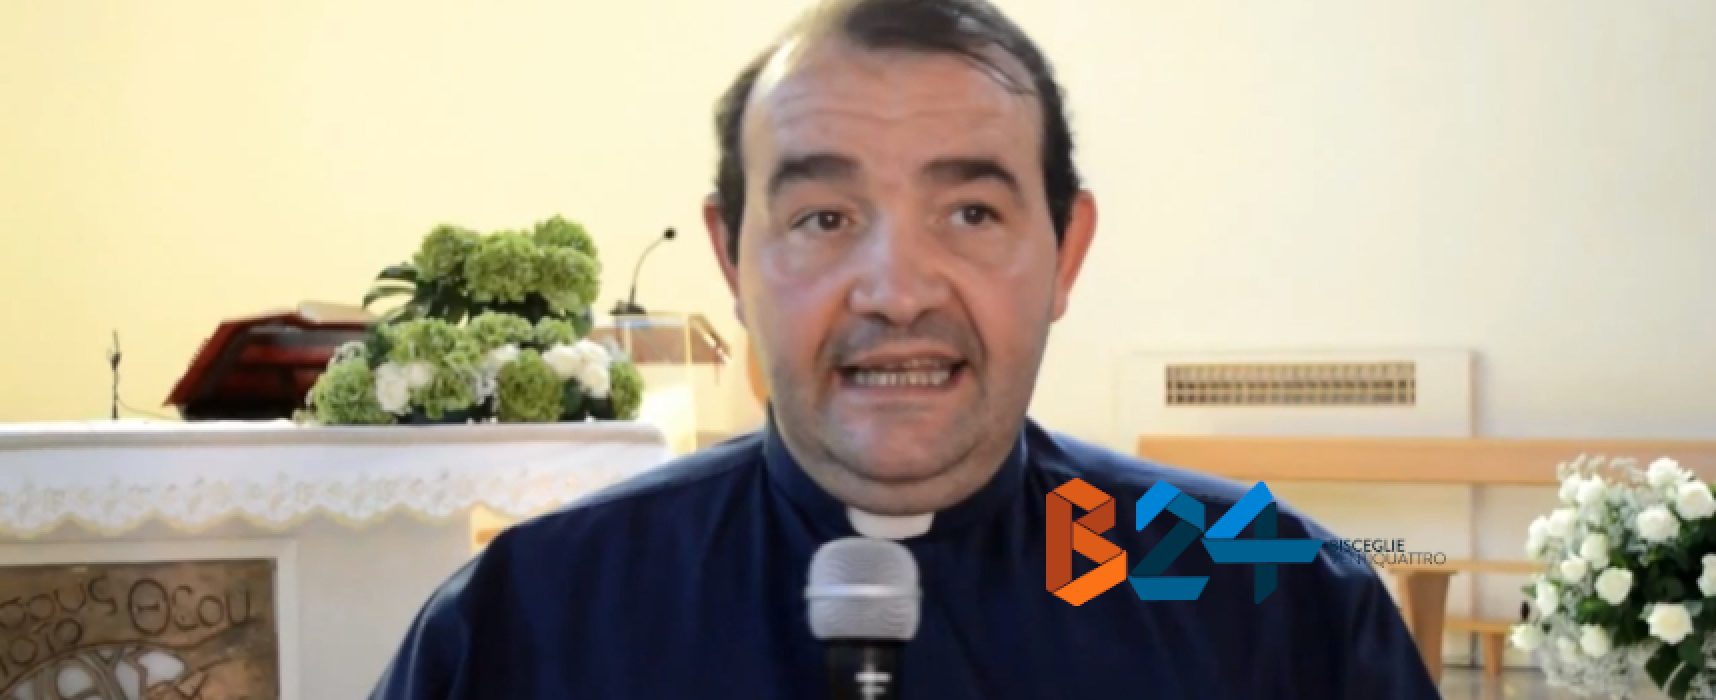 Don Francesco Di Liddo festeggia venticinque anni di sacerdozio: “Impegno e accoglienza”